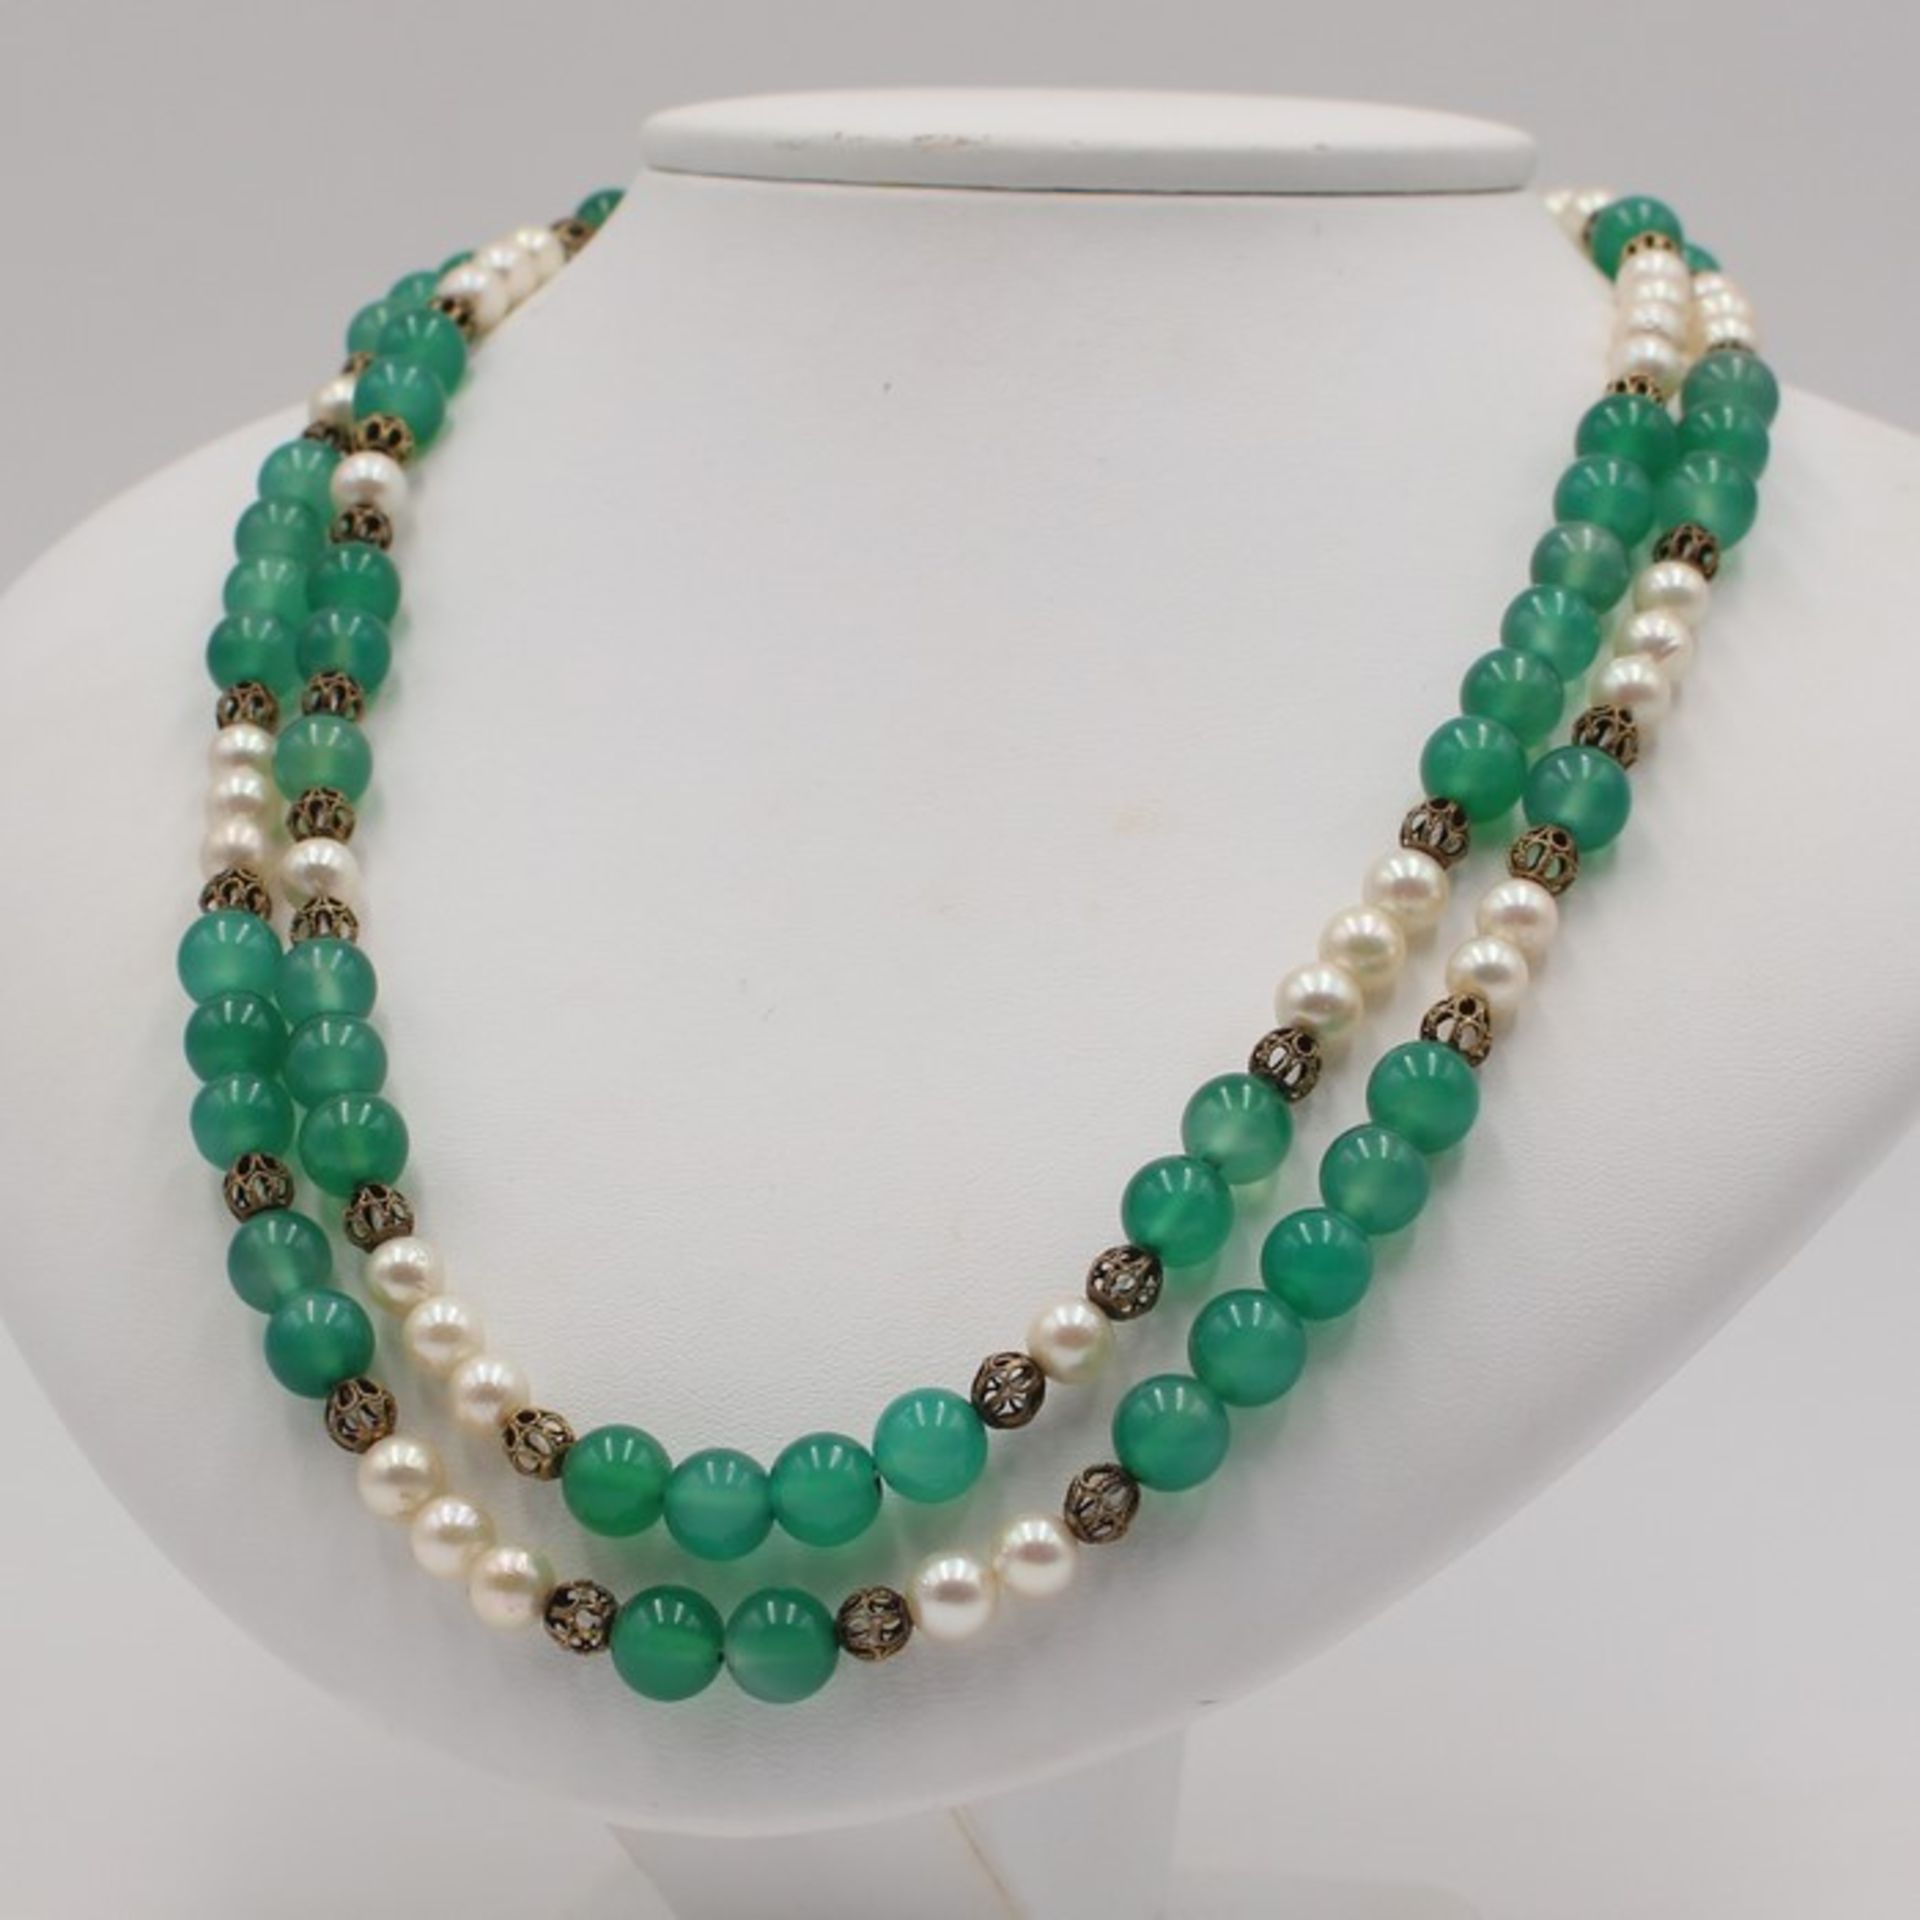 Perlen/Achat - Ketteaus weiß lüstrierenden Perlen, Dca.0,4cm Grünachat-Kugeln sowie durchbrochene